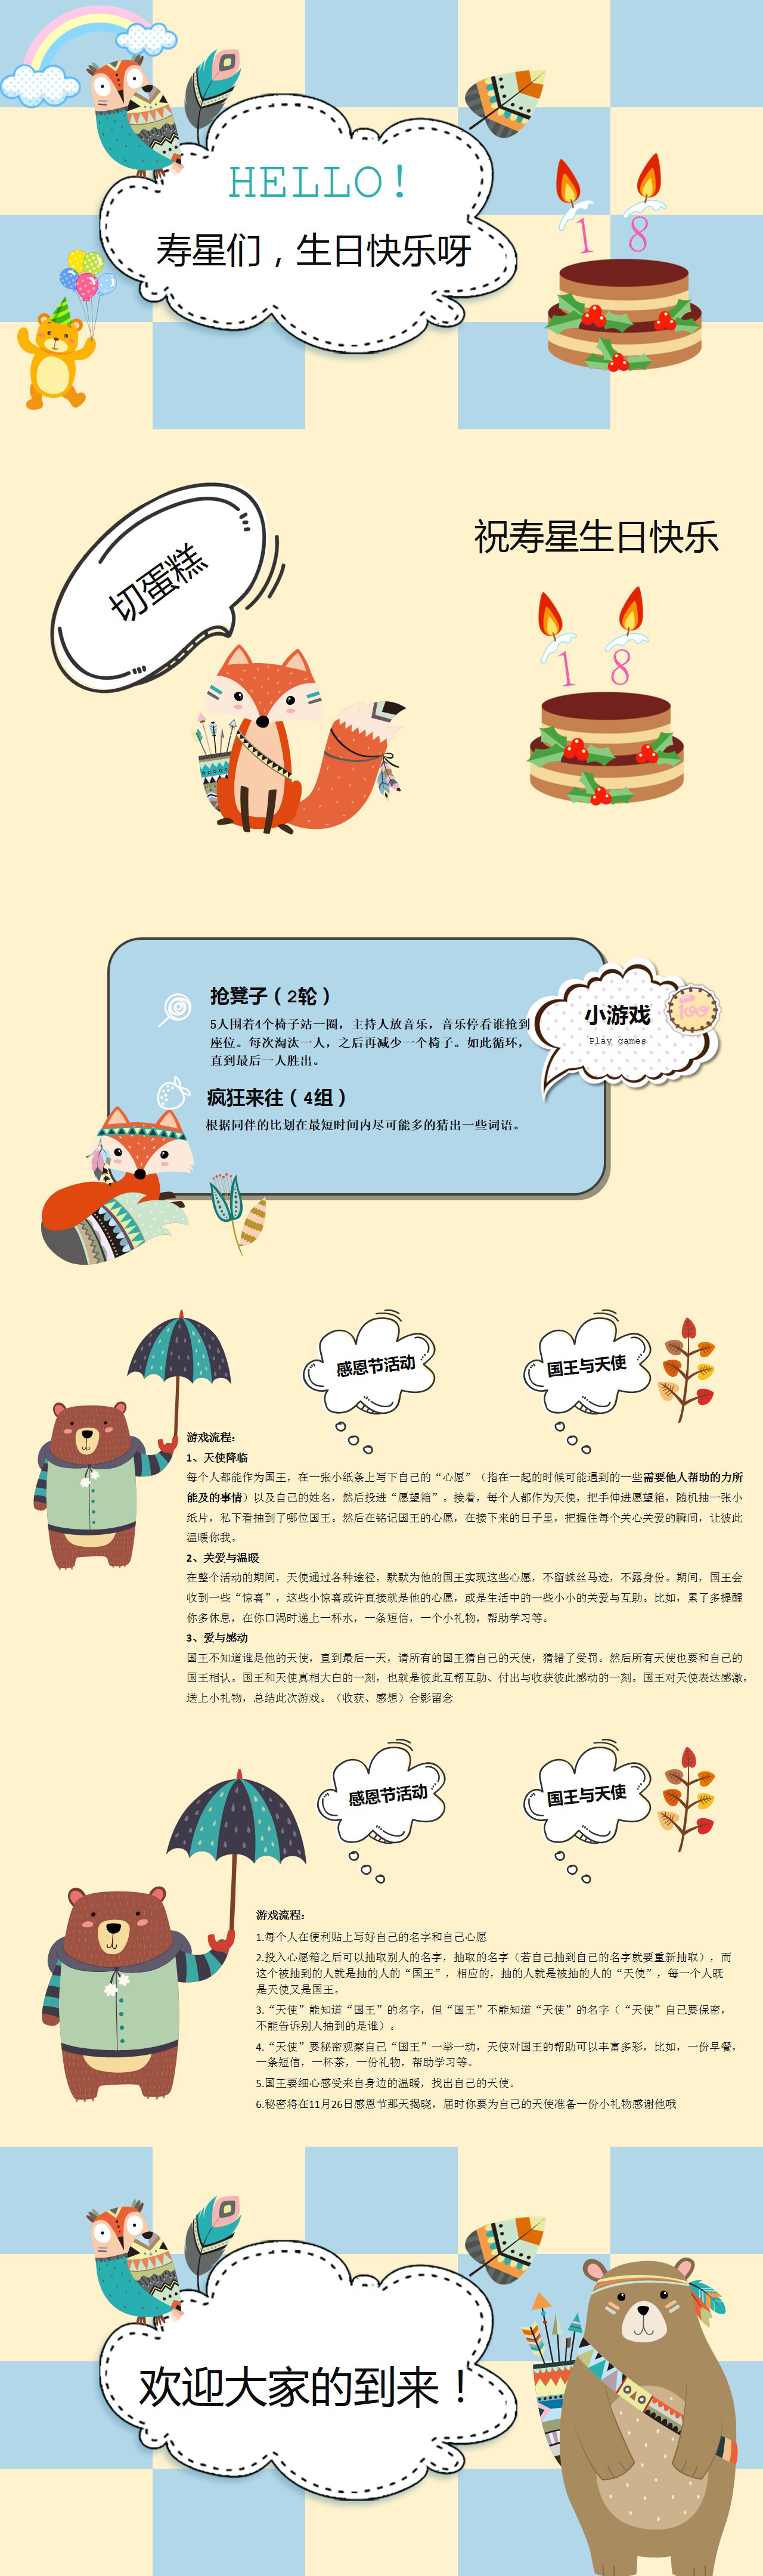 尊龙凯时·(中国)app官方网站_产品10000